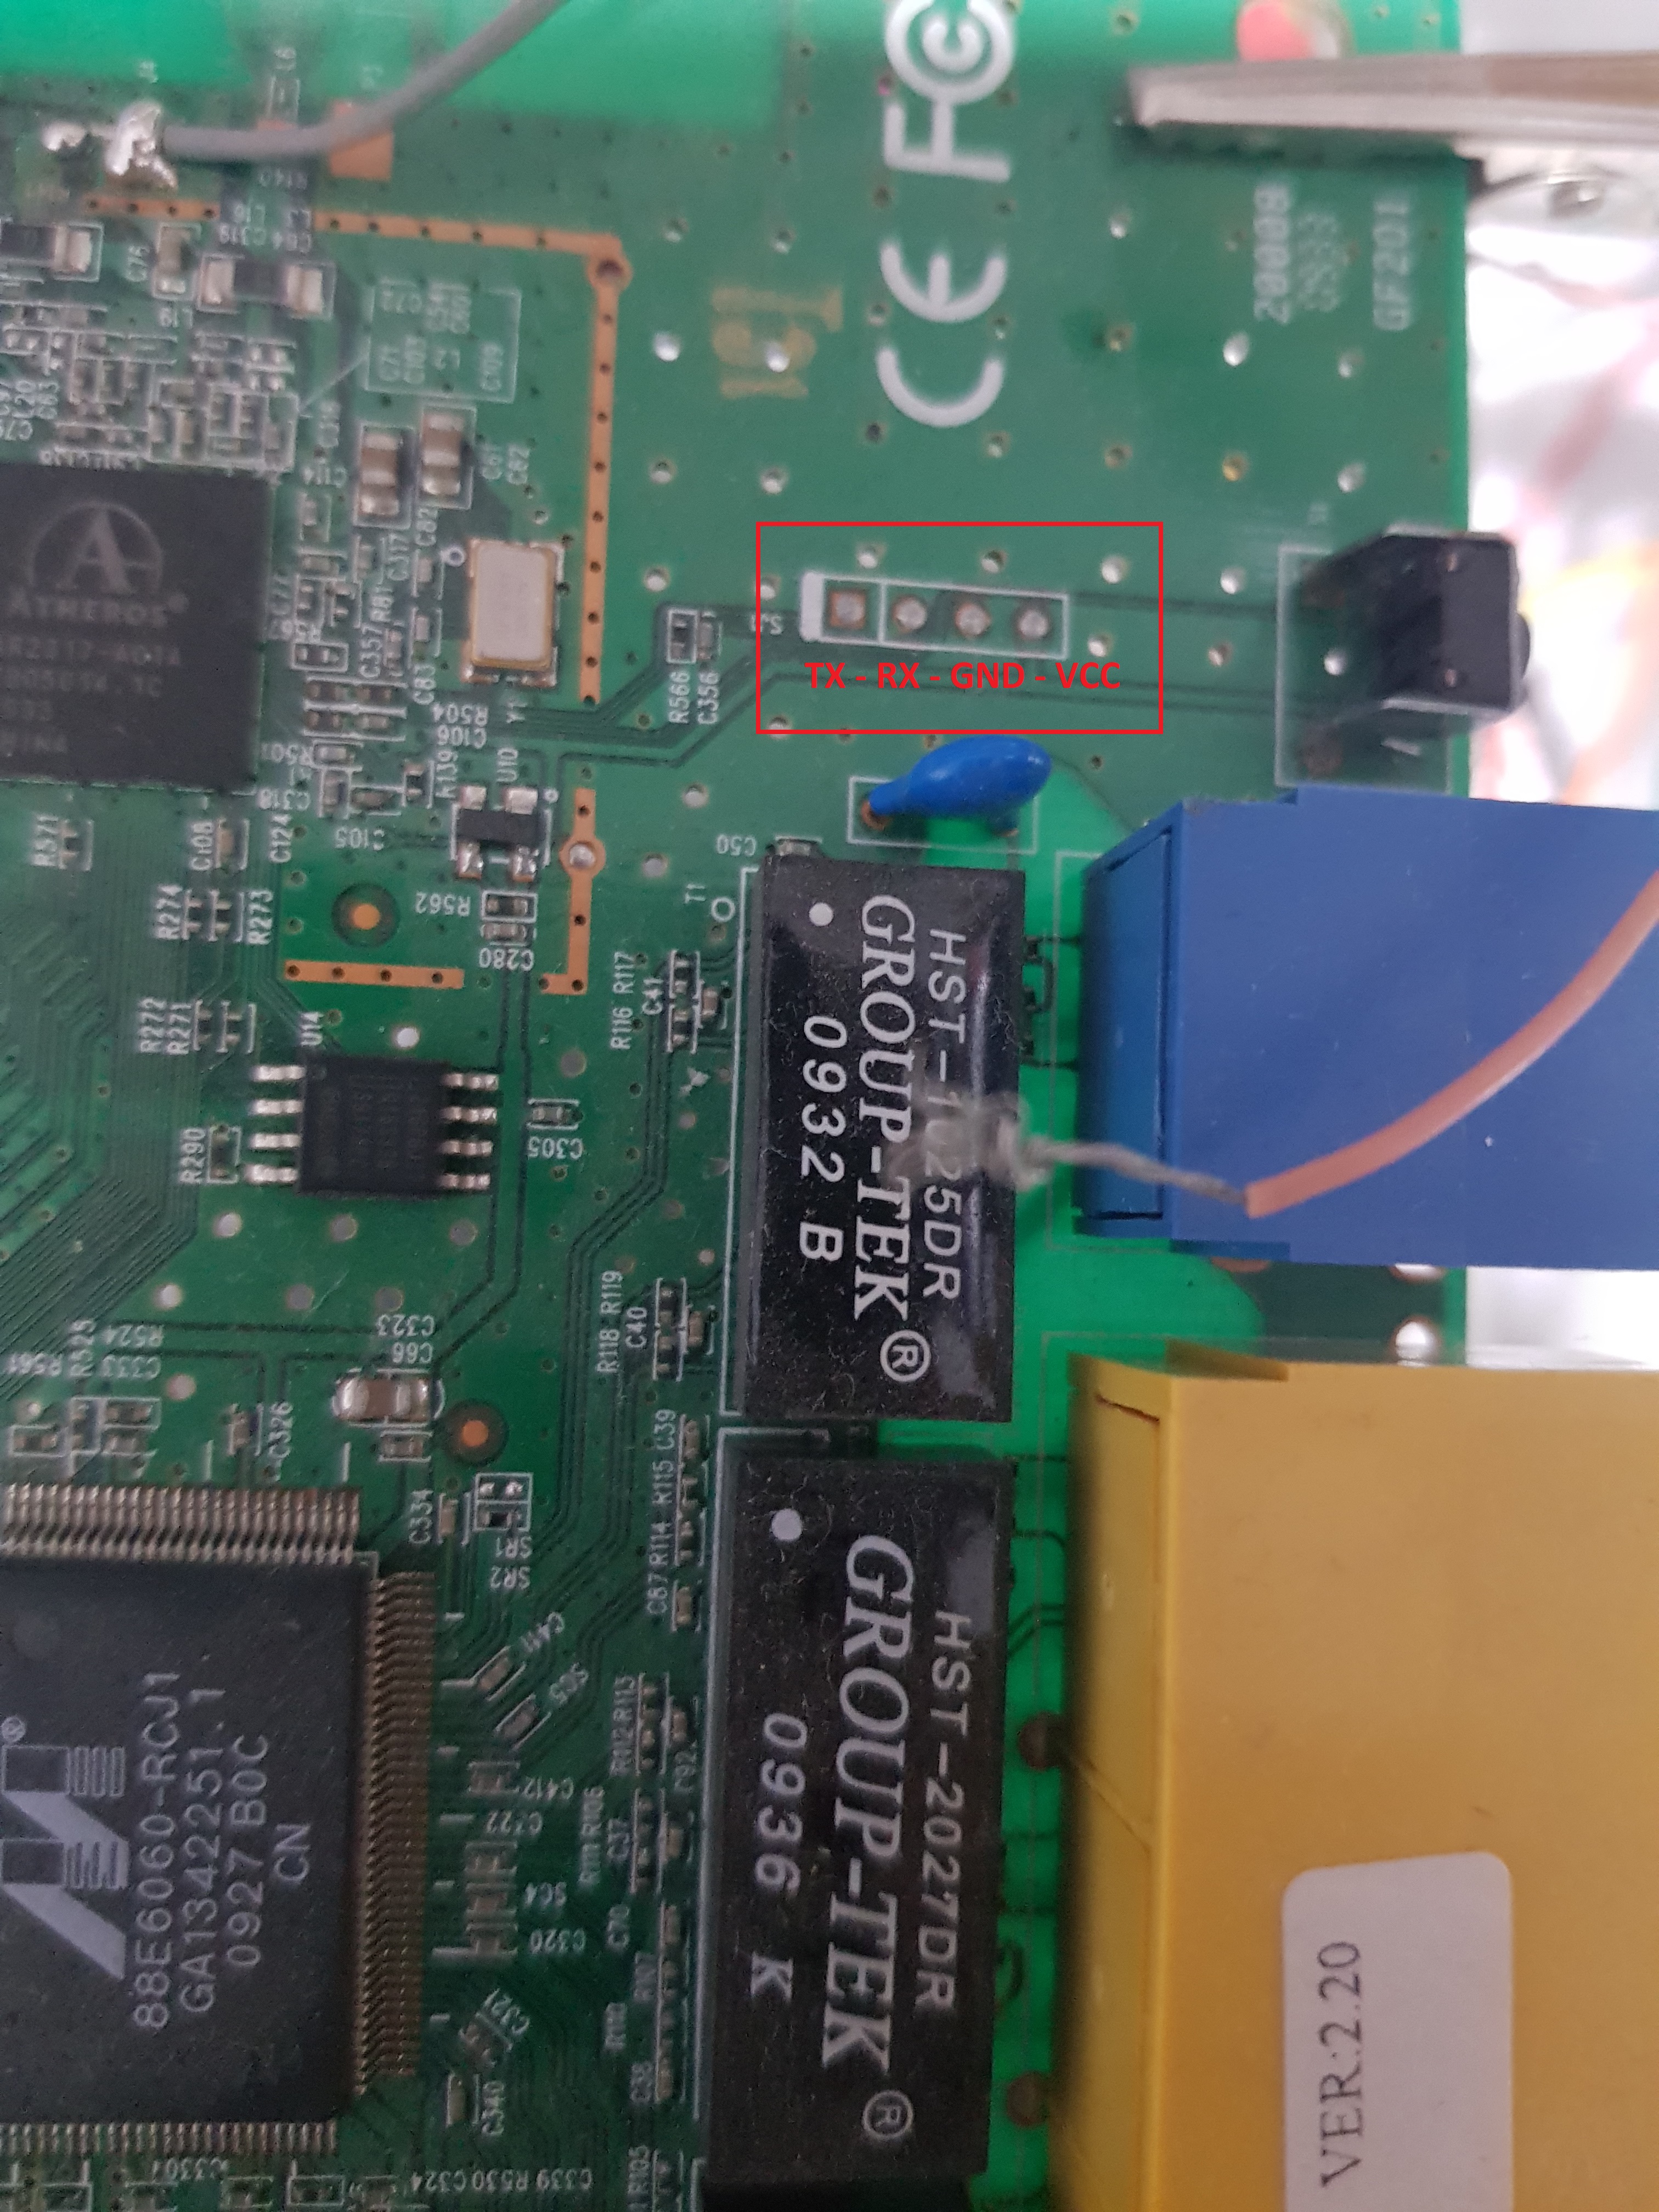 UART port on PCB